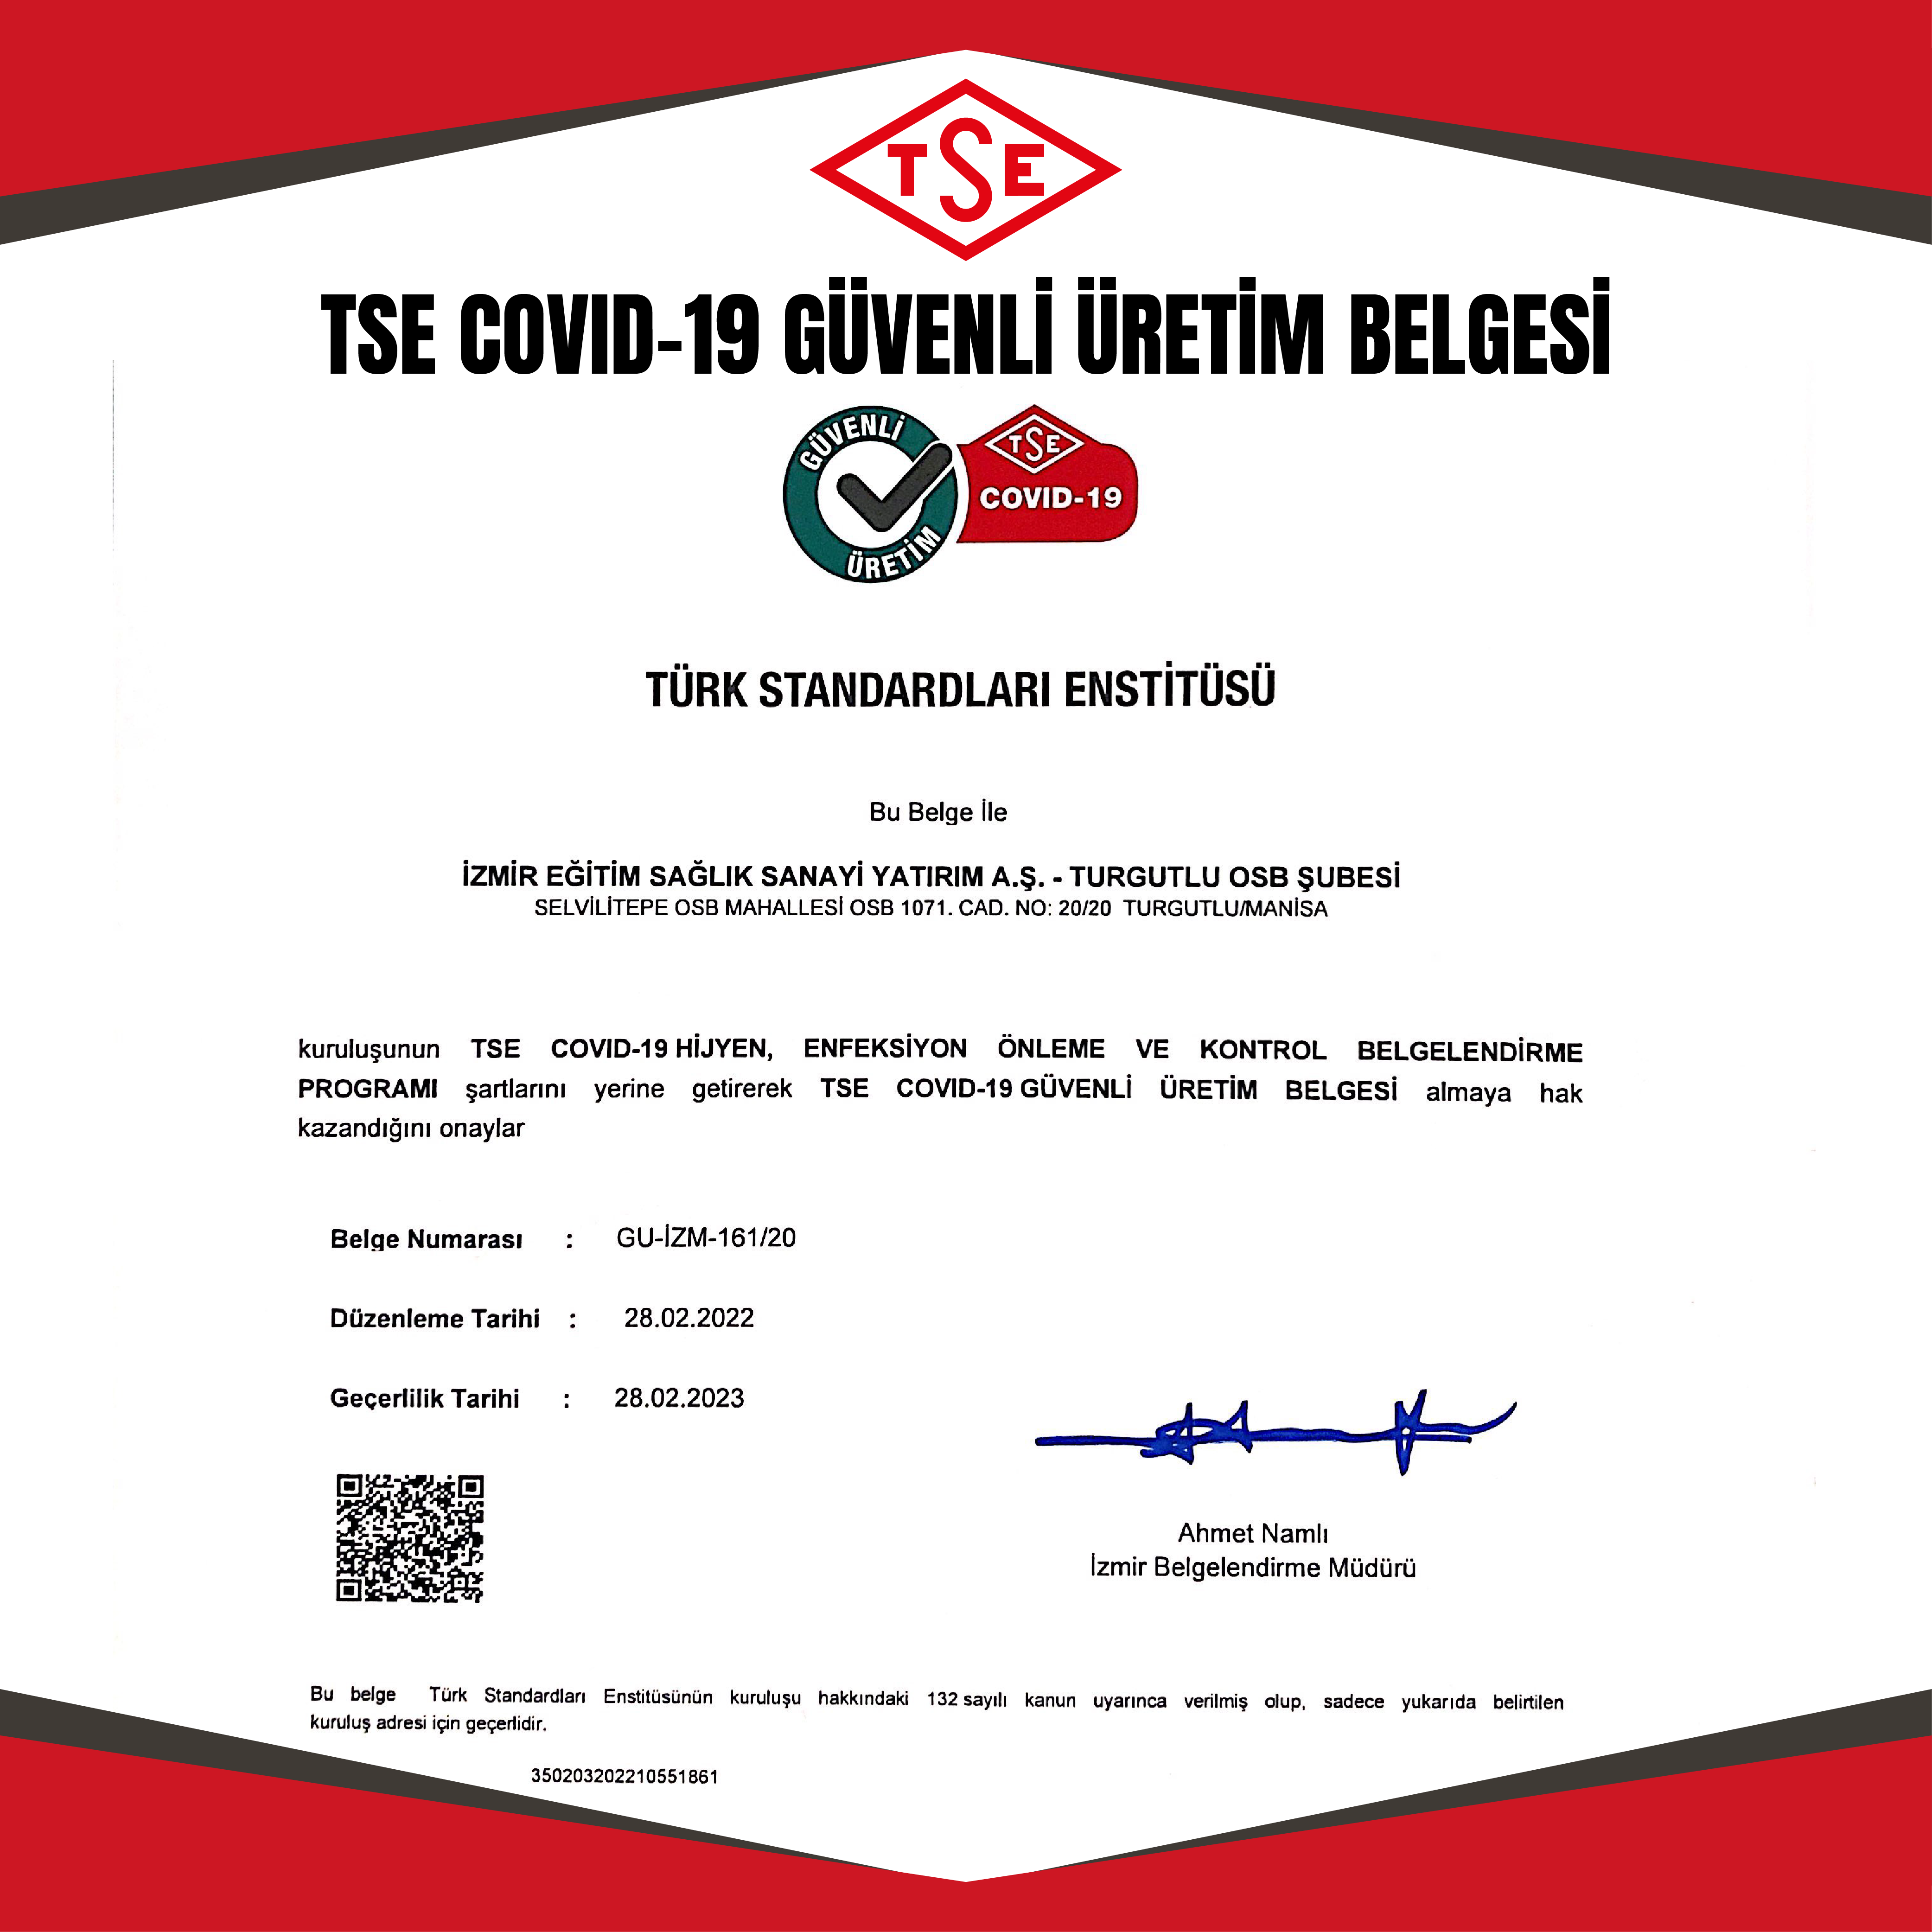 TSE Covid-19 Güvenli Üretim Belgesini Almaya Tekrar Hak Kazandık